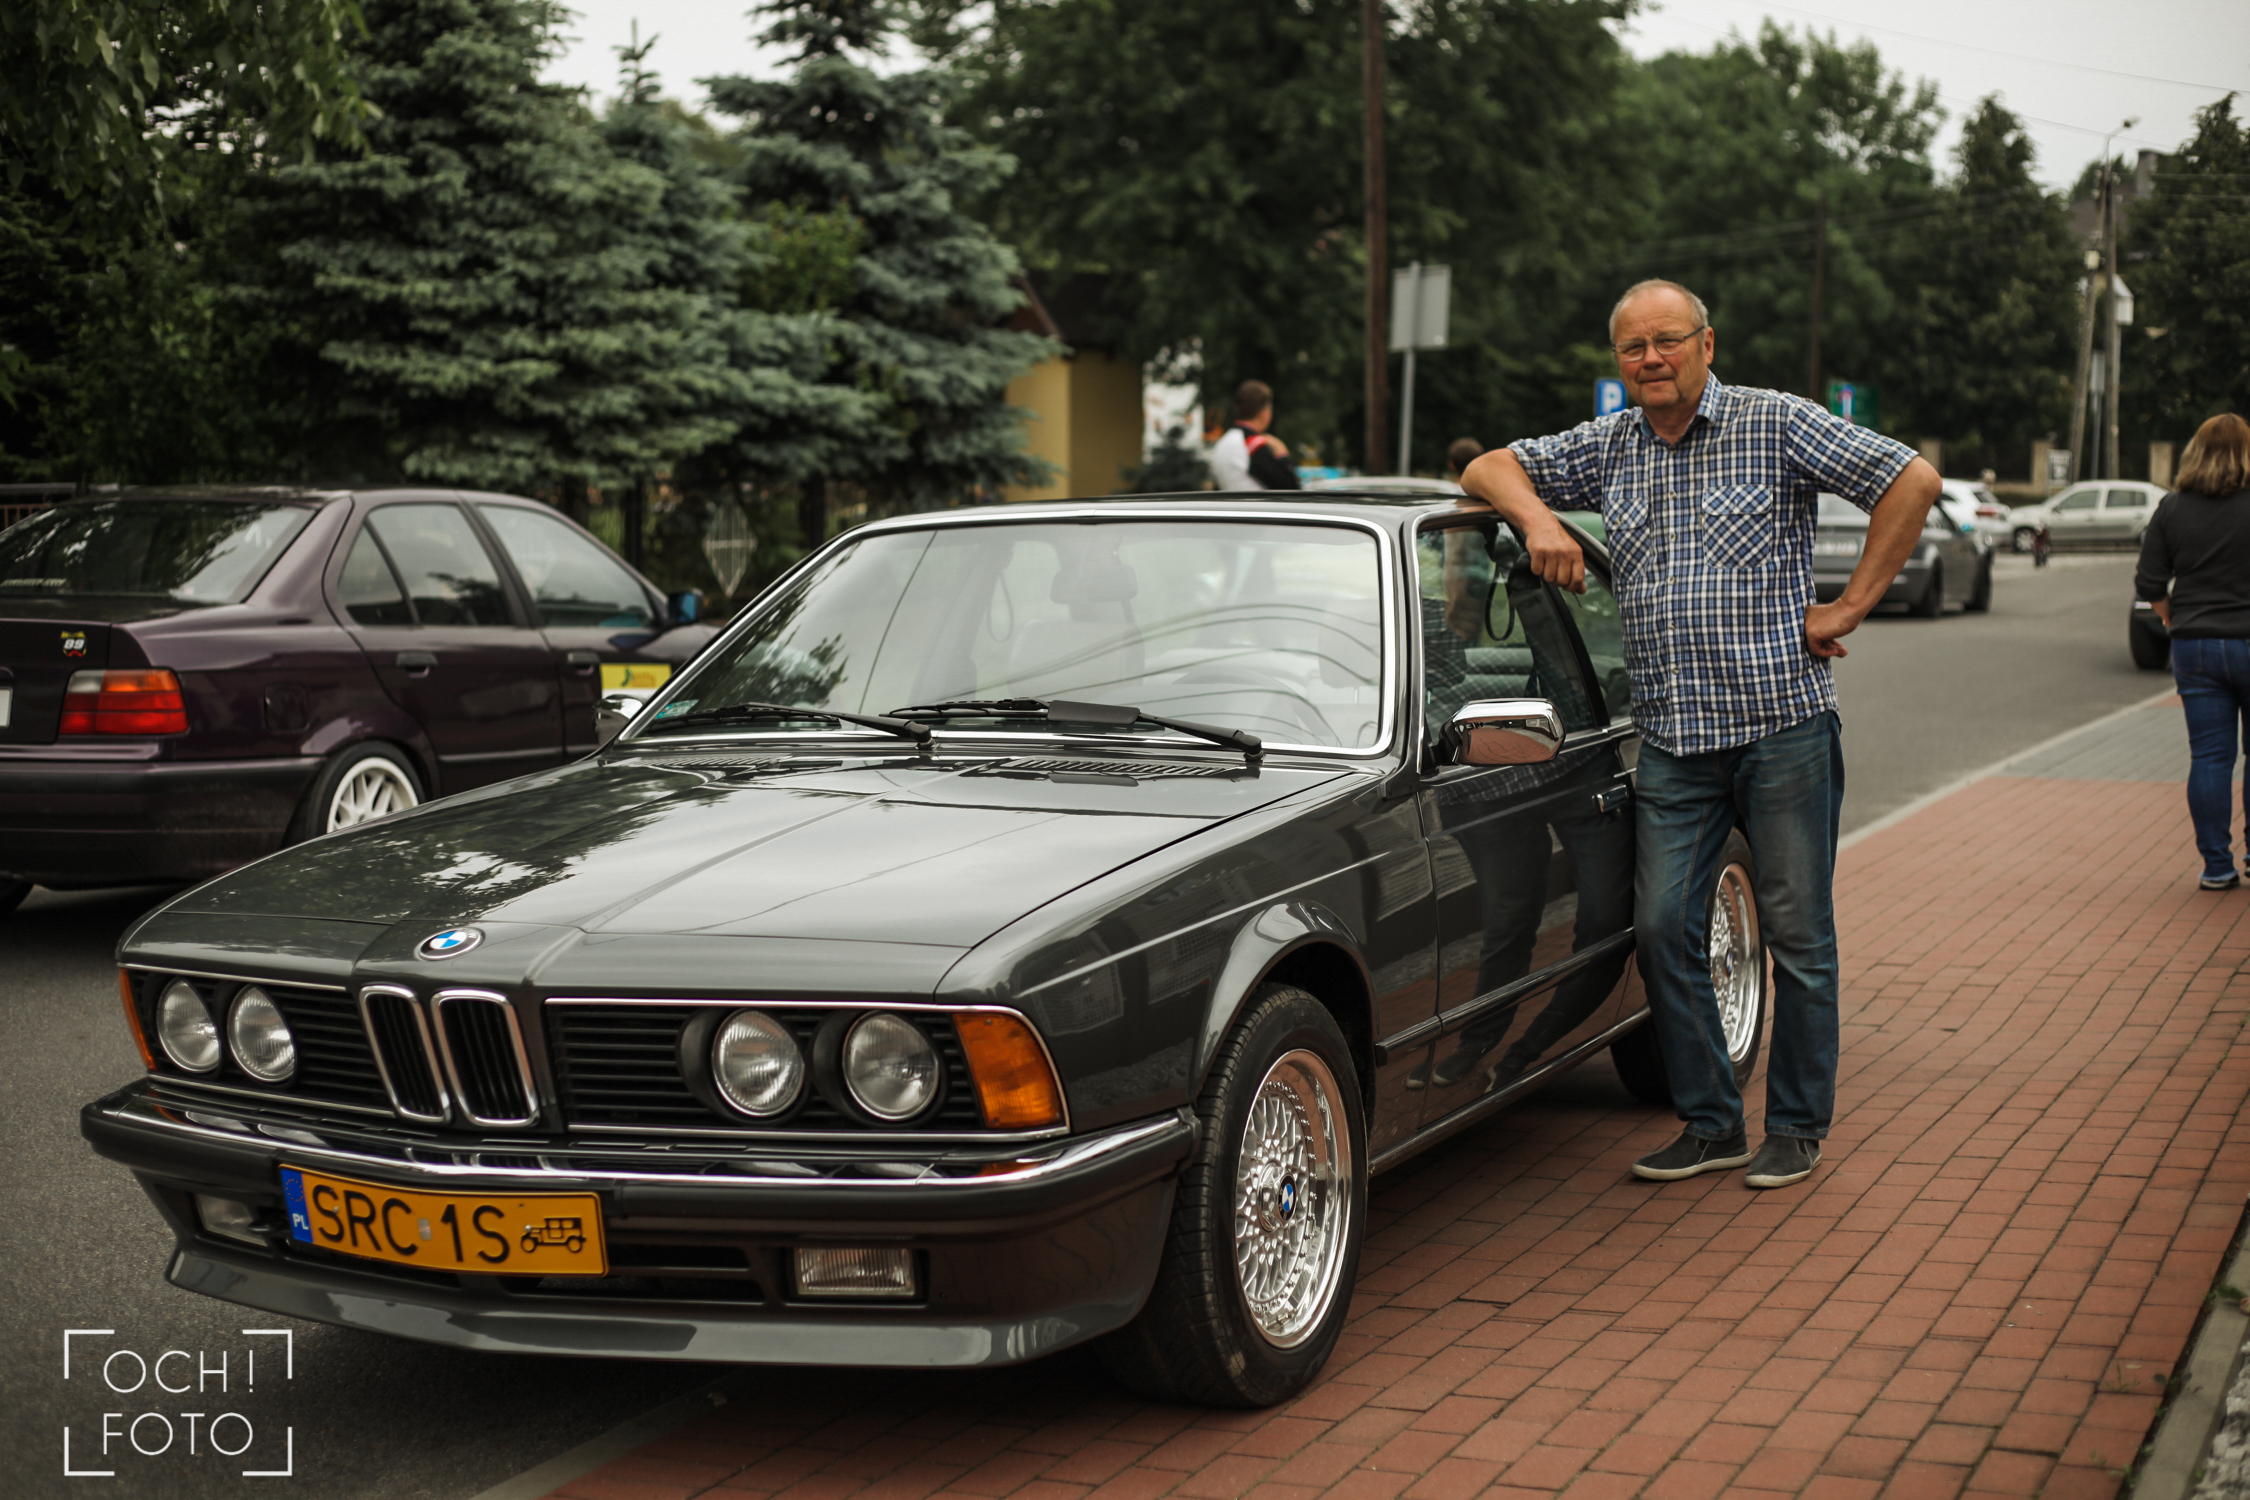 Renowacja tego BMW to ponad 2 lata pracy – mówi właściciel.